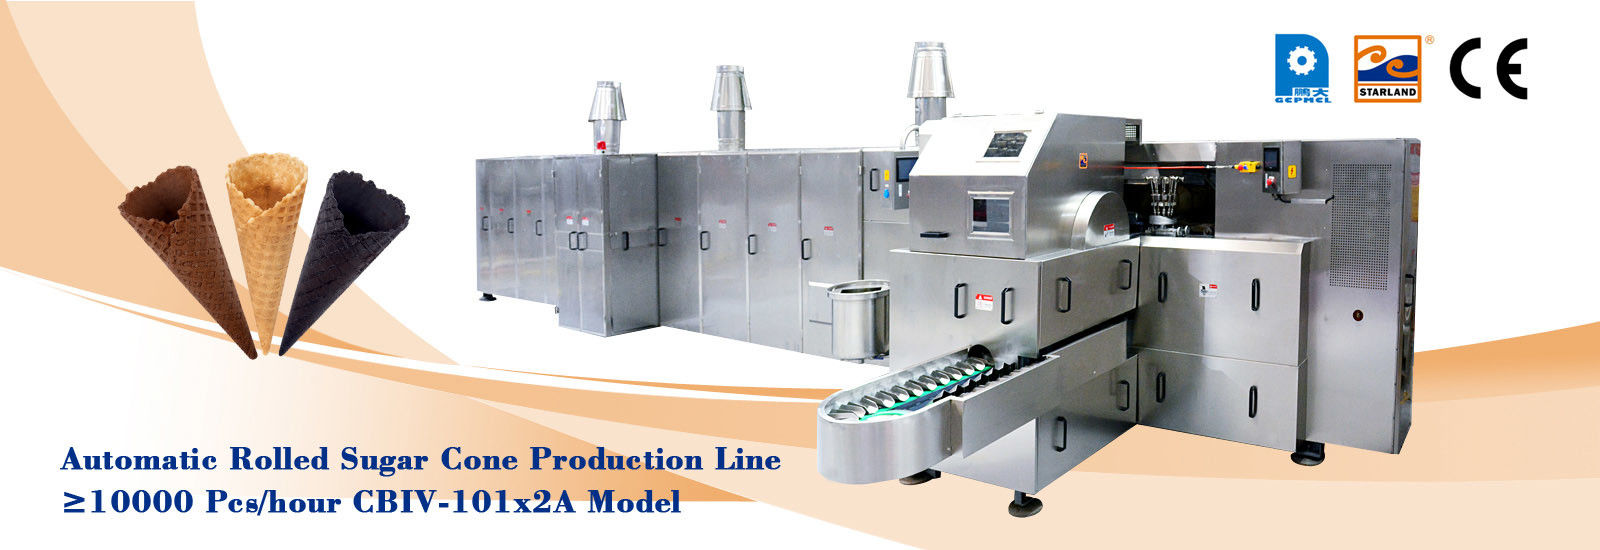 kualitas Jalur Produksi Gula Kerucut Otomatis pabrik